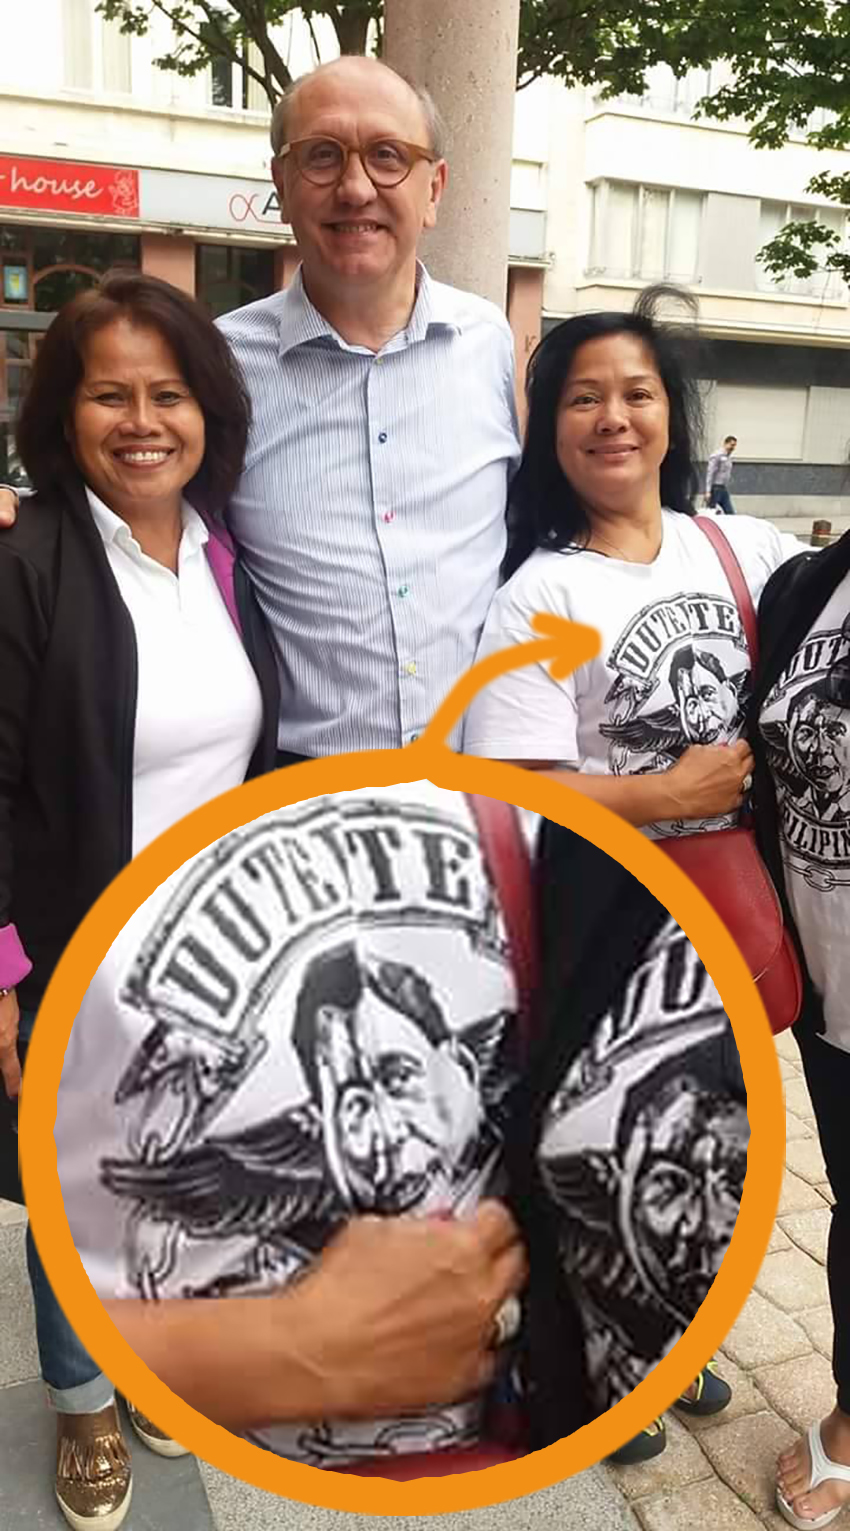 Keizer van Oostende vrolijk op de foto met aanhangers van moordende dictator Duterte